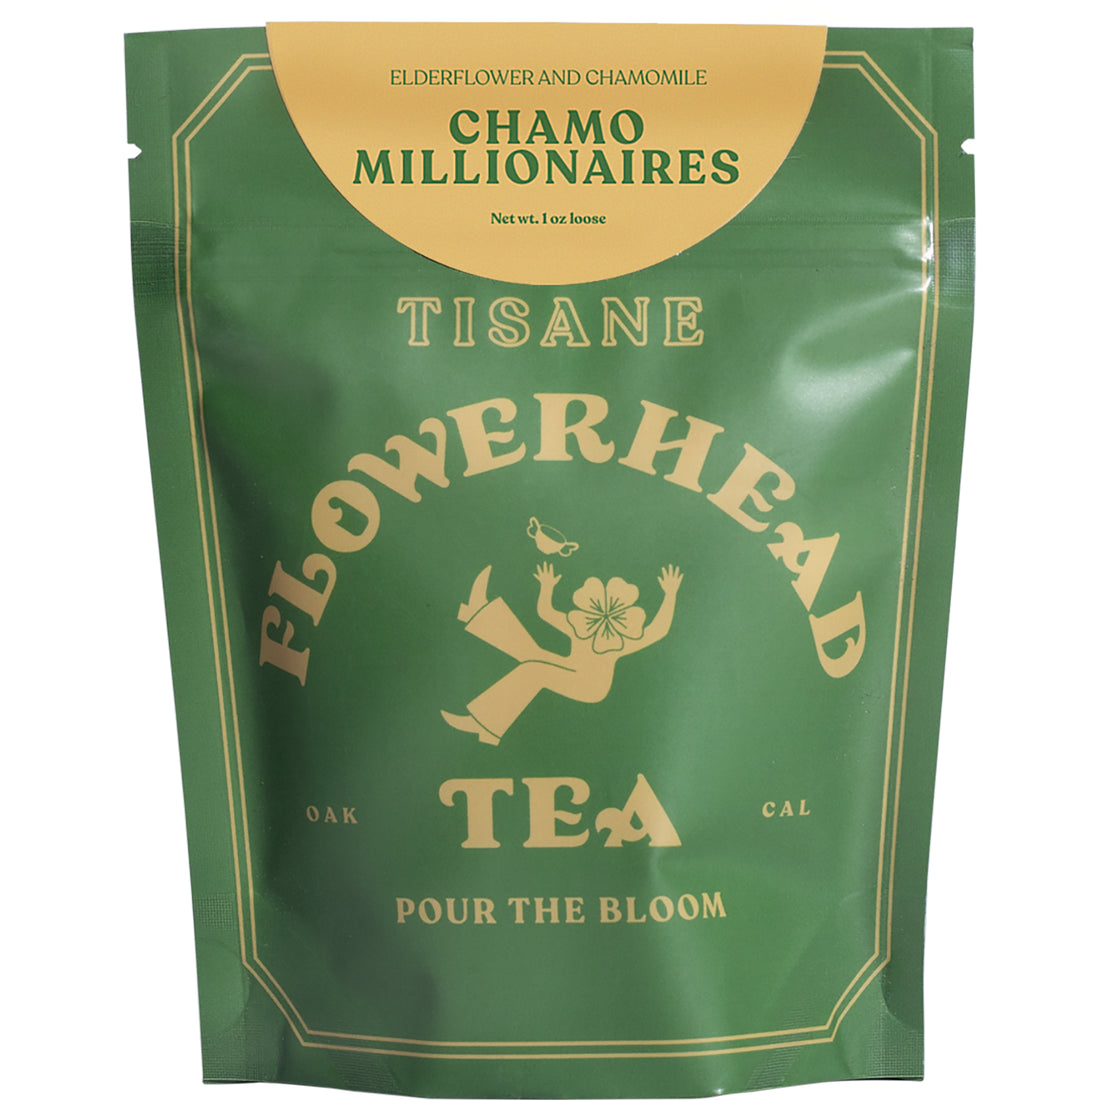 Flowerhead Tea - Chamomillionaires FLOWERHEAD TEA 